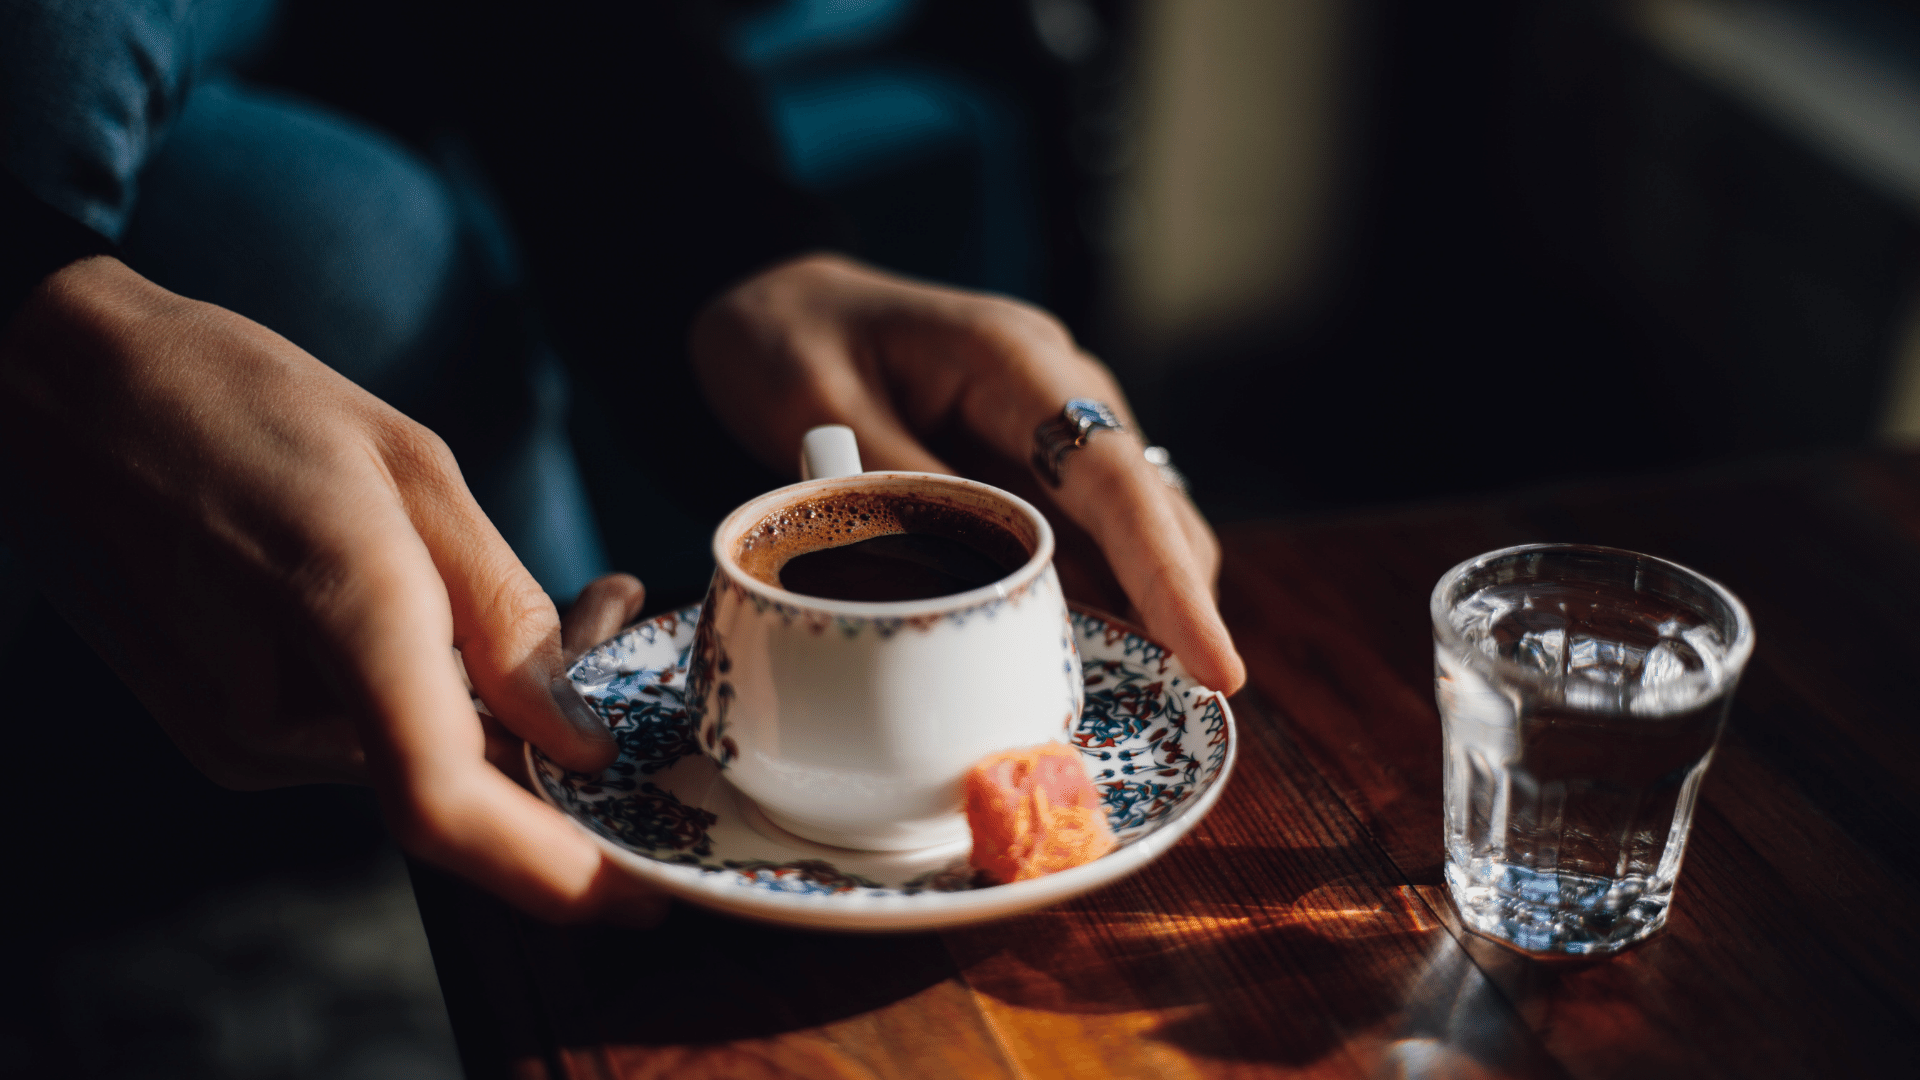 hamileler türk kahvesi i̇çmeli mi?